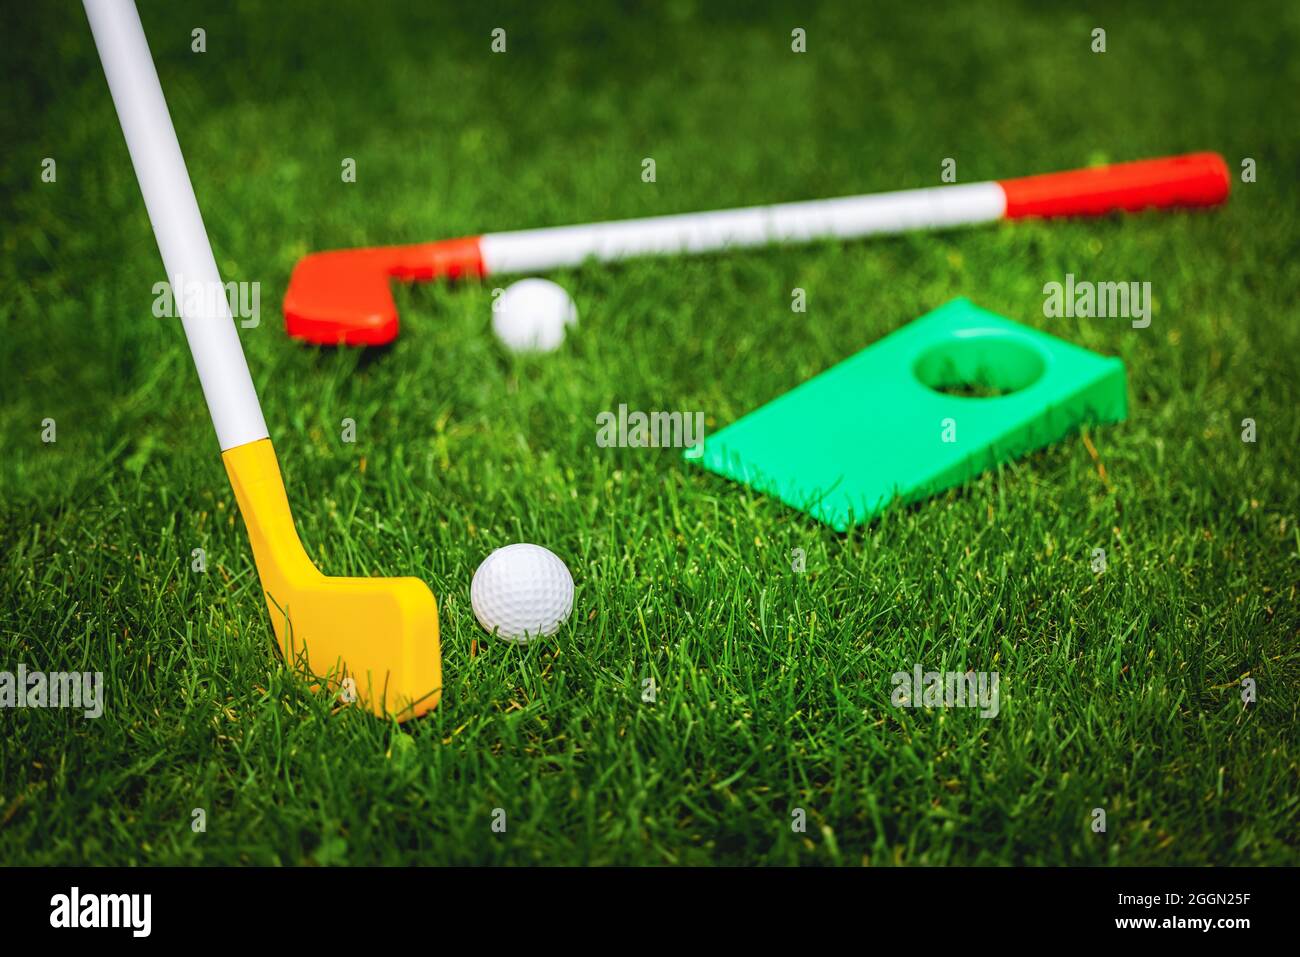 Spielzeug-Golfspiel auf grünem Gras gesetzt. Gartenspiele Stockfoto